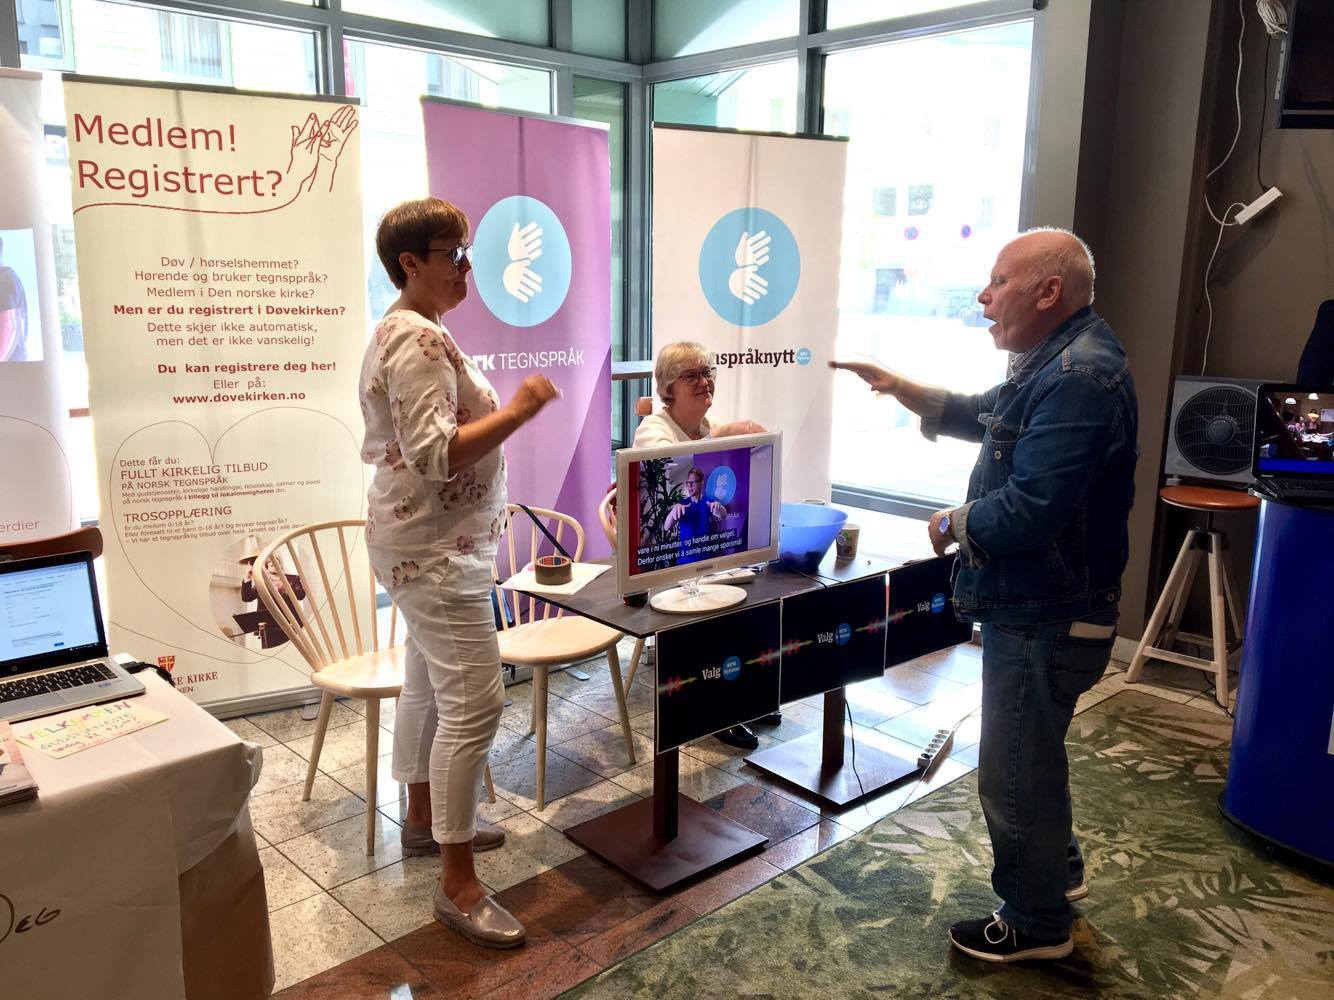 NRK-tegnspråk sin stand. En eldre mann diskuterer med to kvinner fra NRK-tegnspråk.